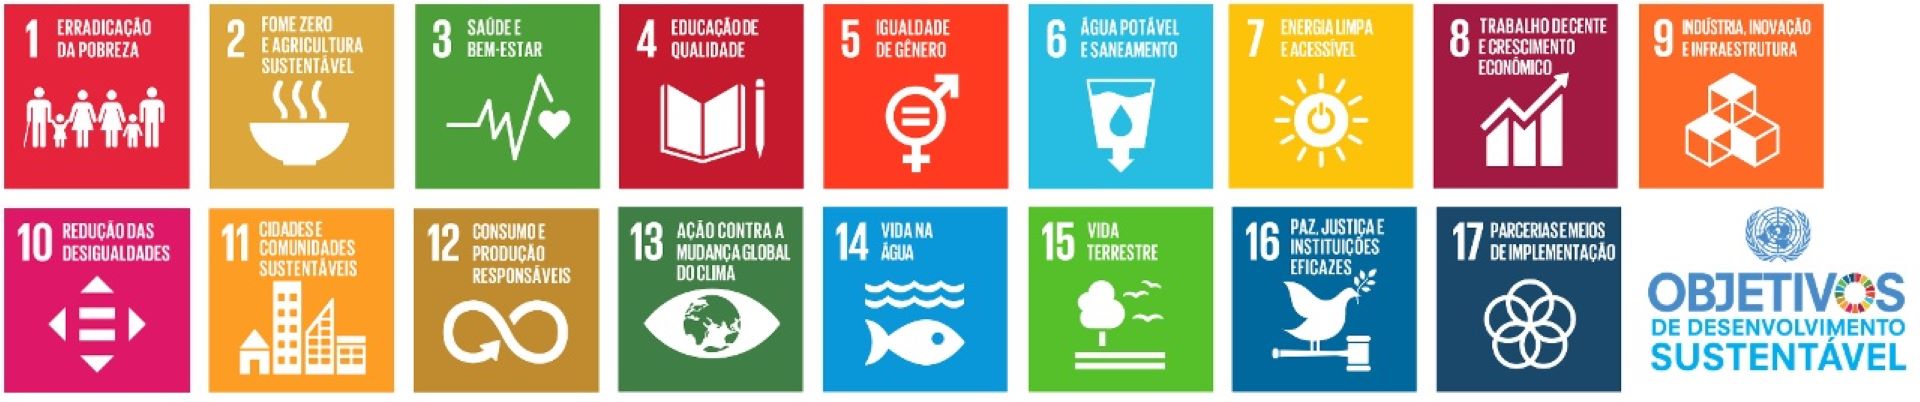 Objetivos de Desenvolvimento Sustentável - ONU